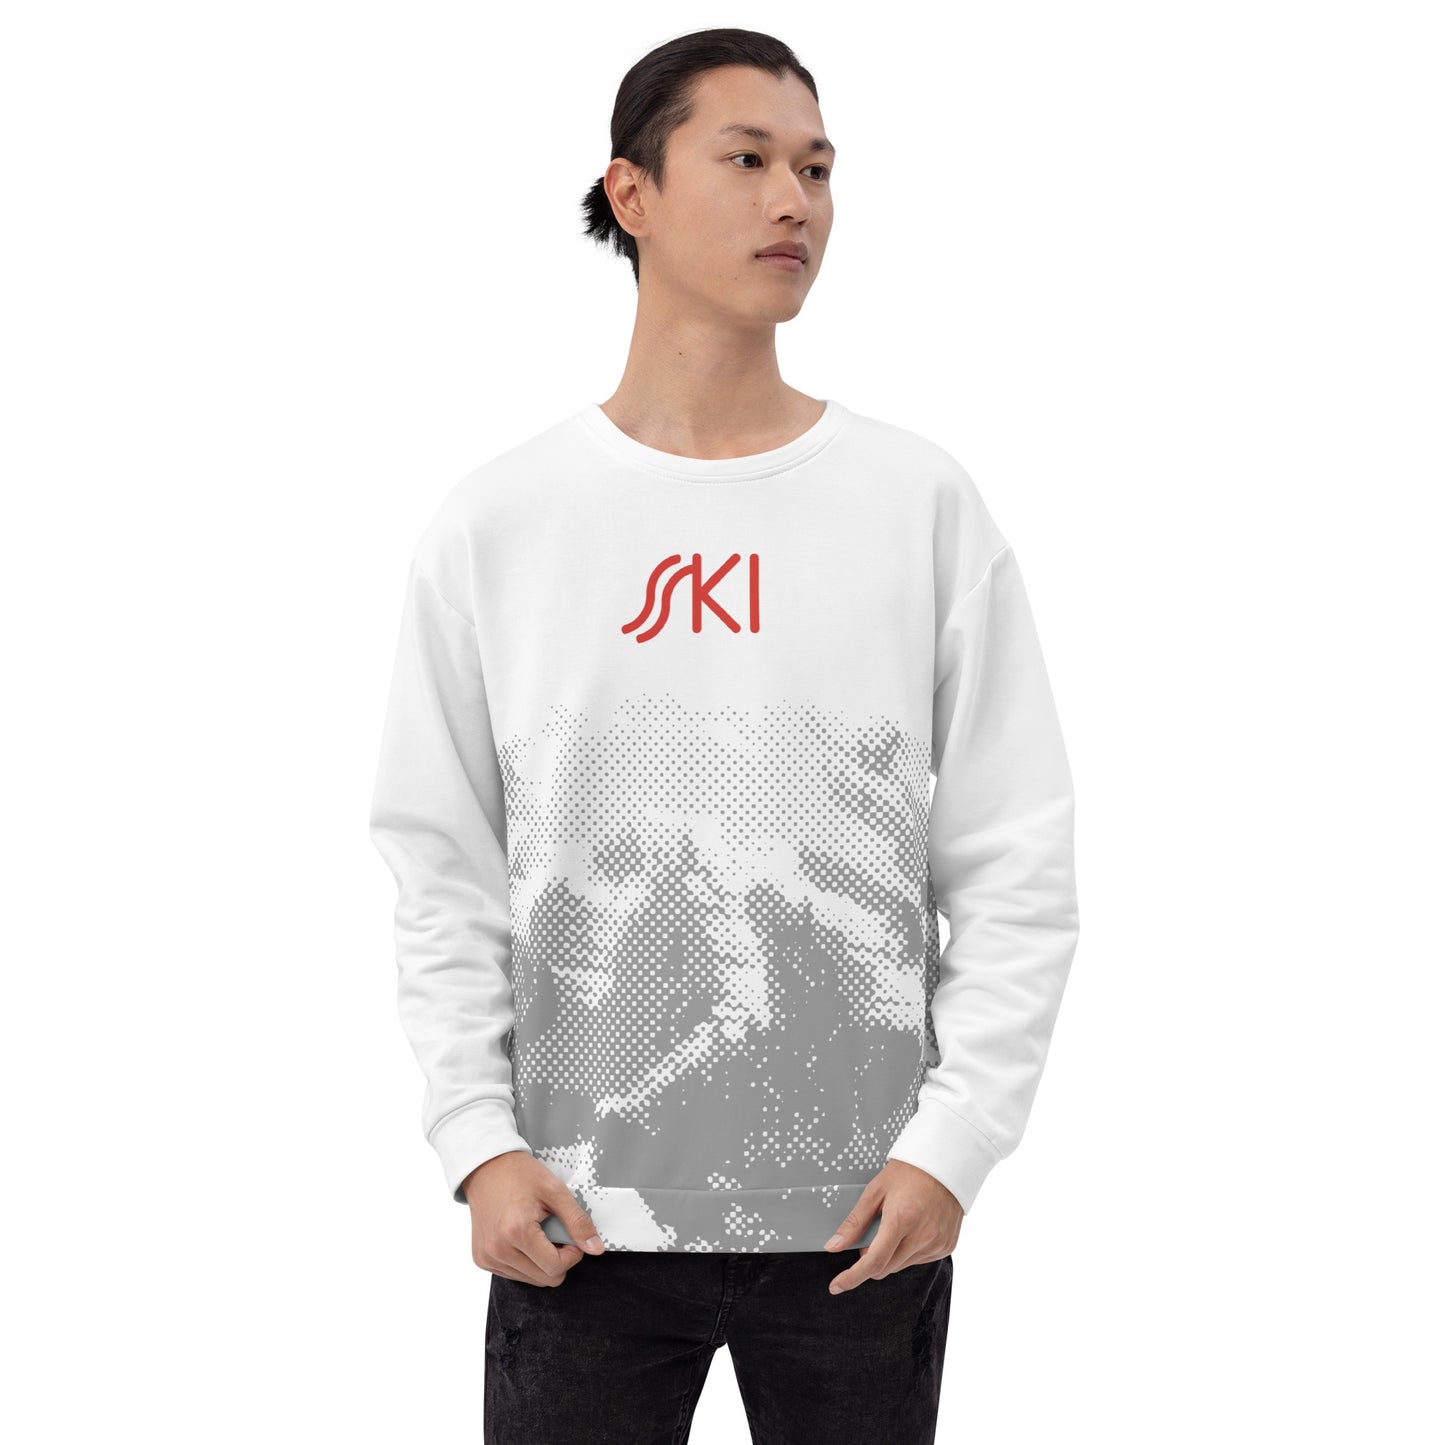 CS0030 - 01005 - AOP SKI Tracks Print Unisex Sweatshirt